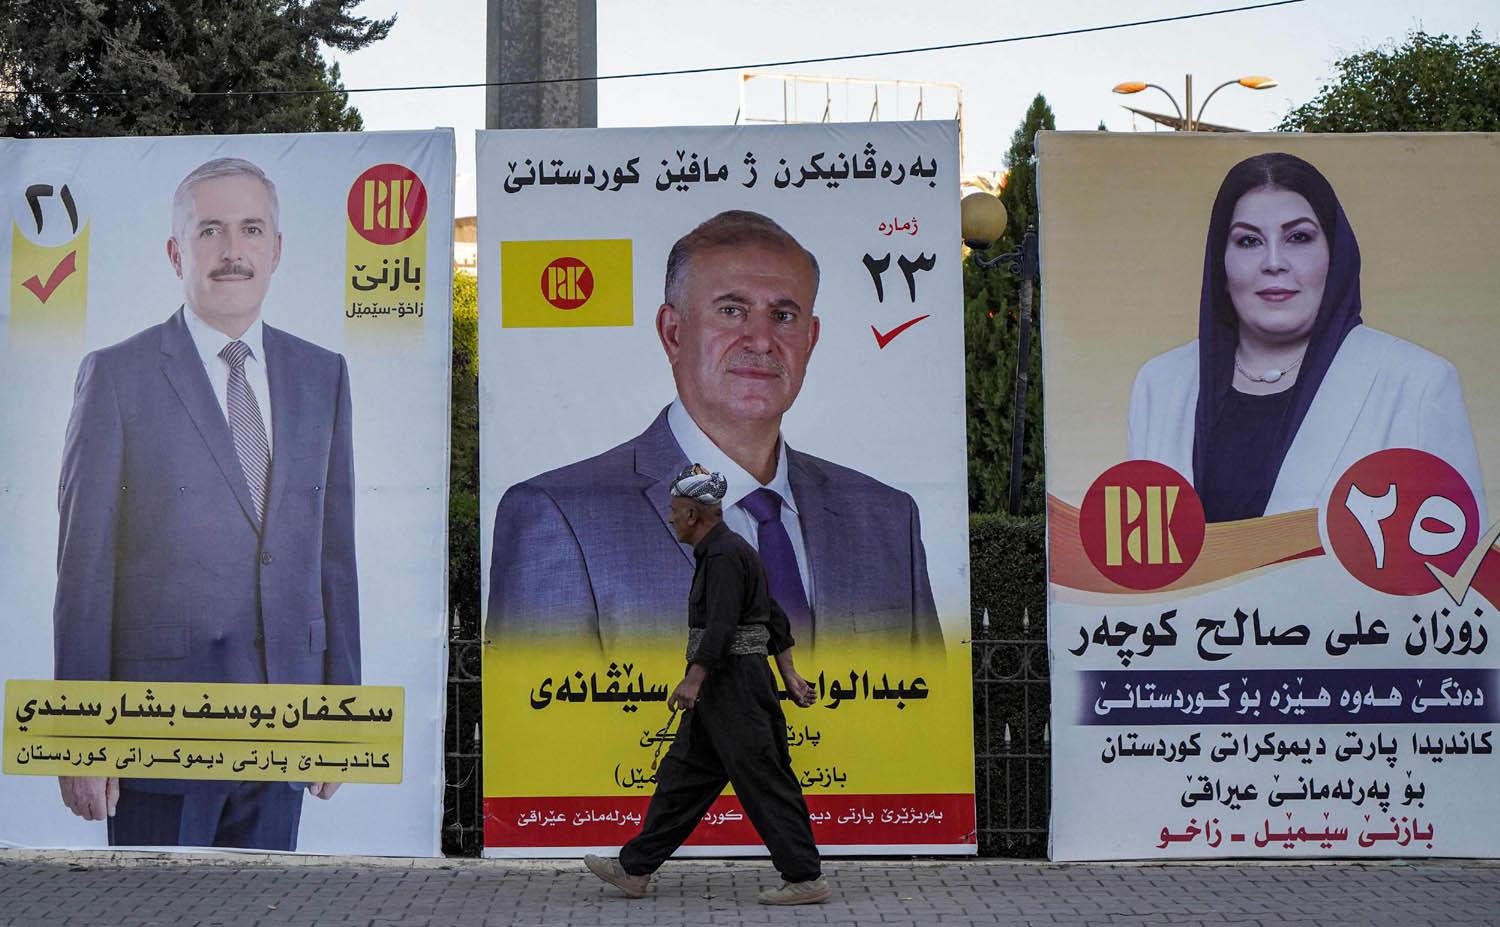 حكومة الإقليم تلقي الكرة بملعب برلمان كوردستان بما يخص مصير مفوضية الإنتخابات